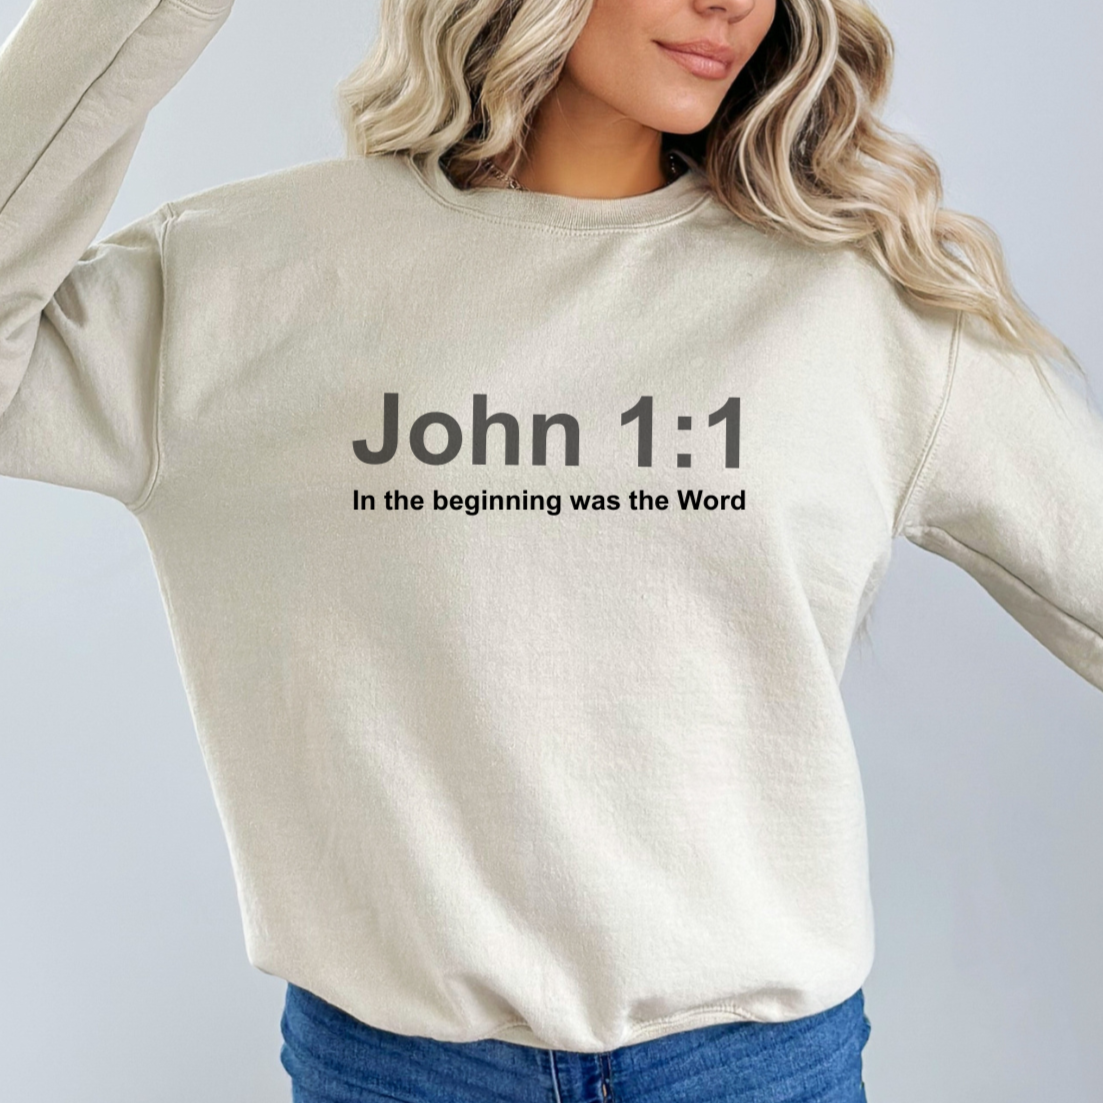 JOHN 1:1 CREWNECK